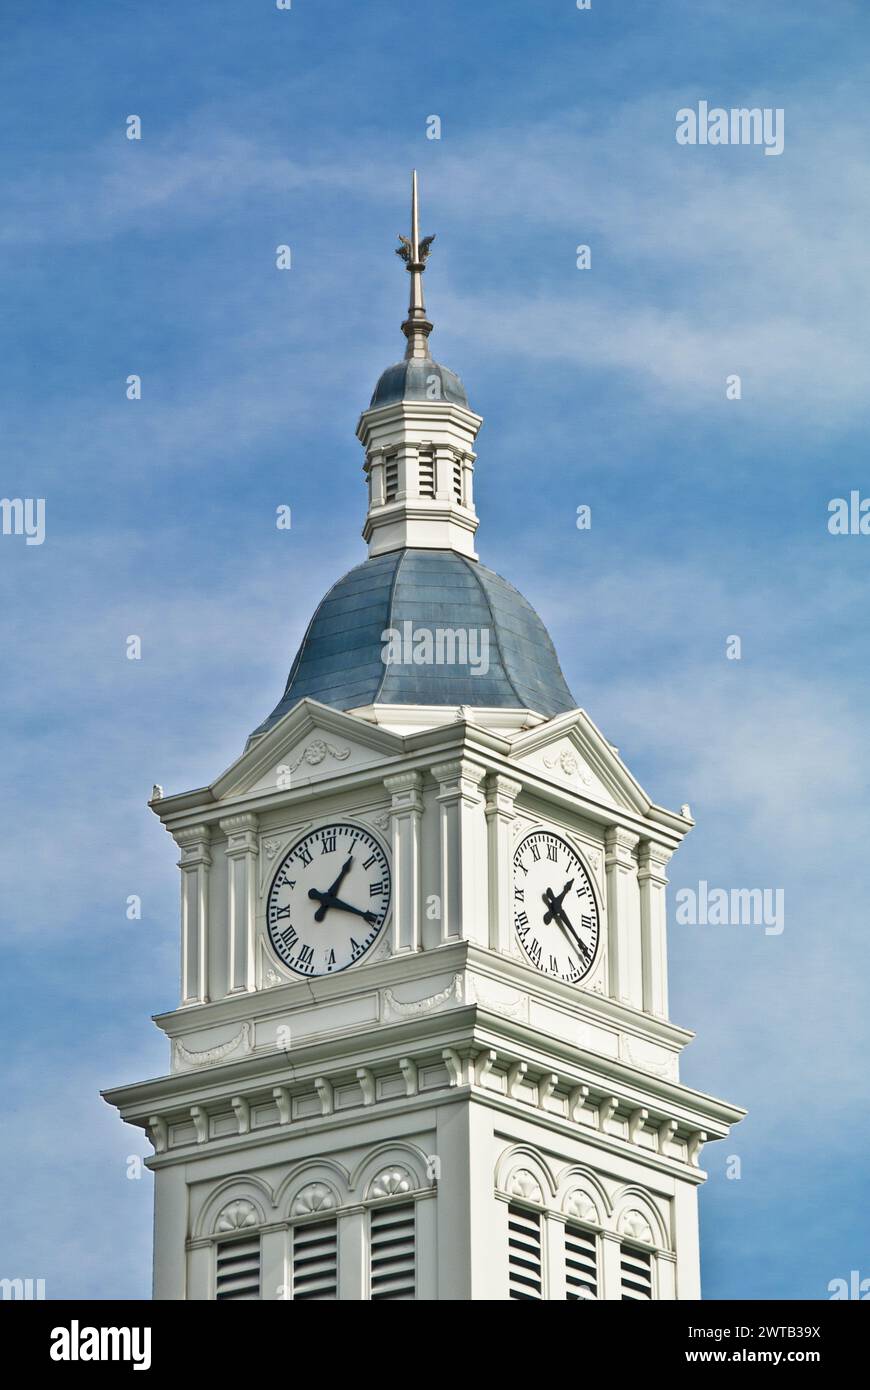 Der Uhrenturm auf dem Nassau County Courthouse wurde 1891 erbaut und ist das älteste Gerichtsgebäude in Dauerbetrieb - Fernandina Beach auf Amelia Island in Florida Stockfoto